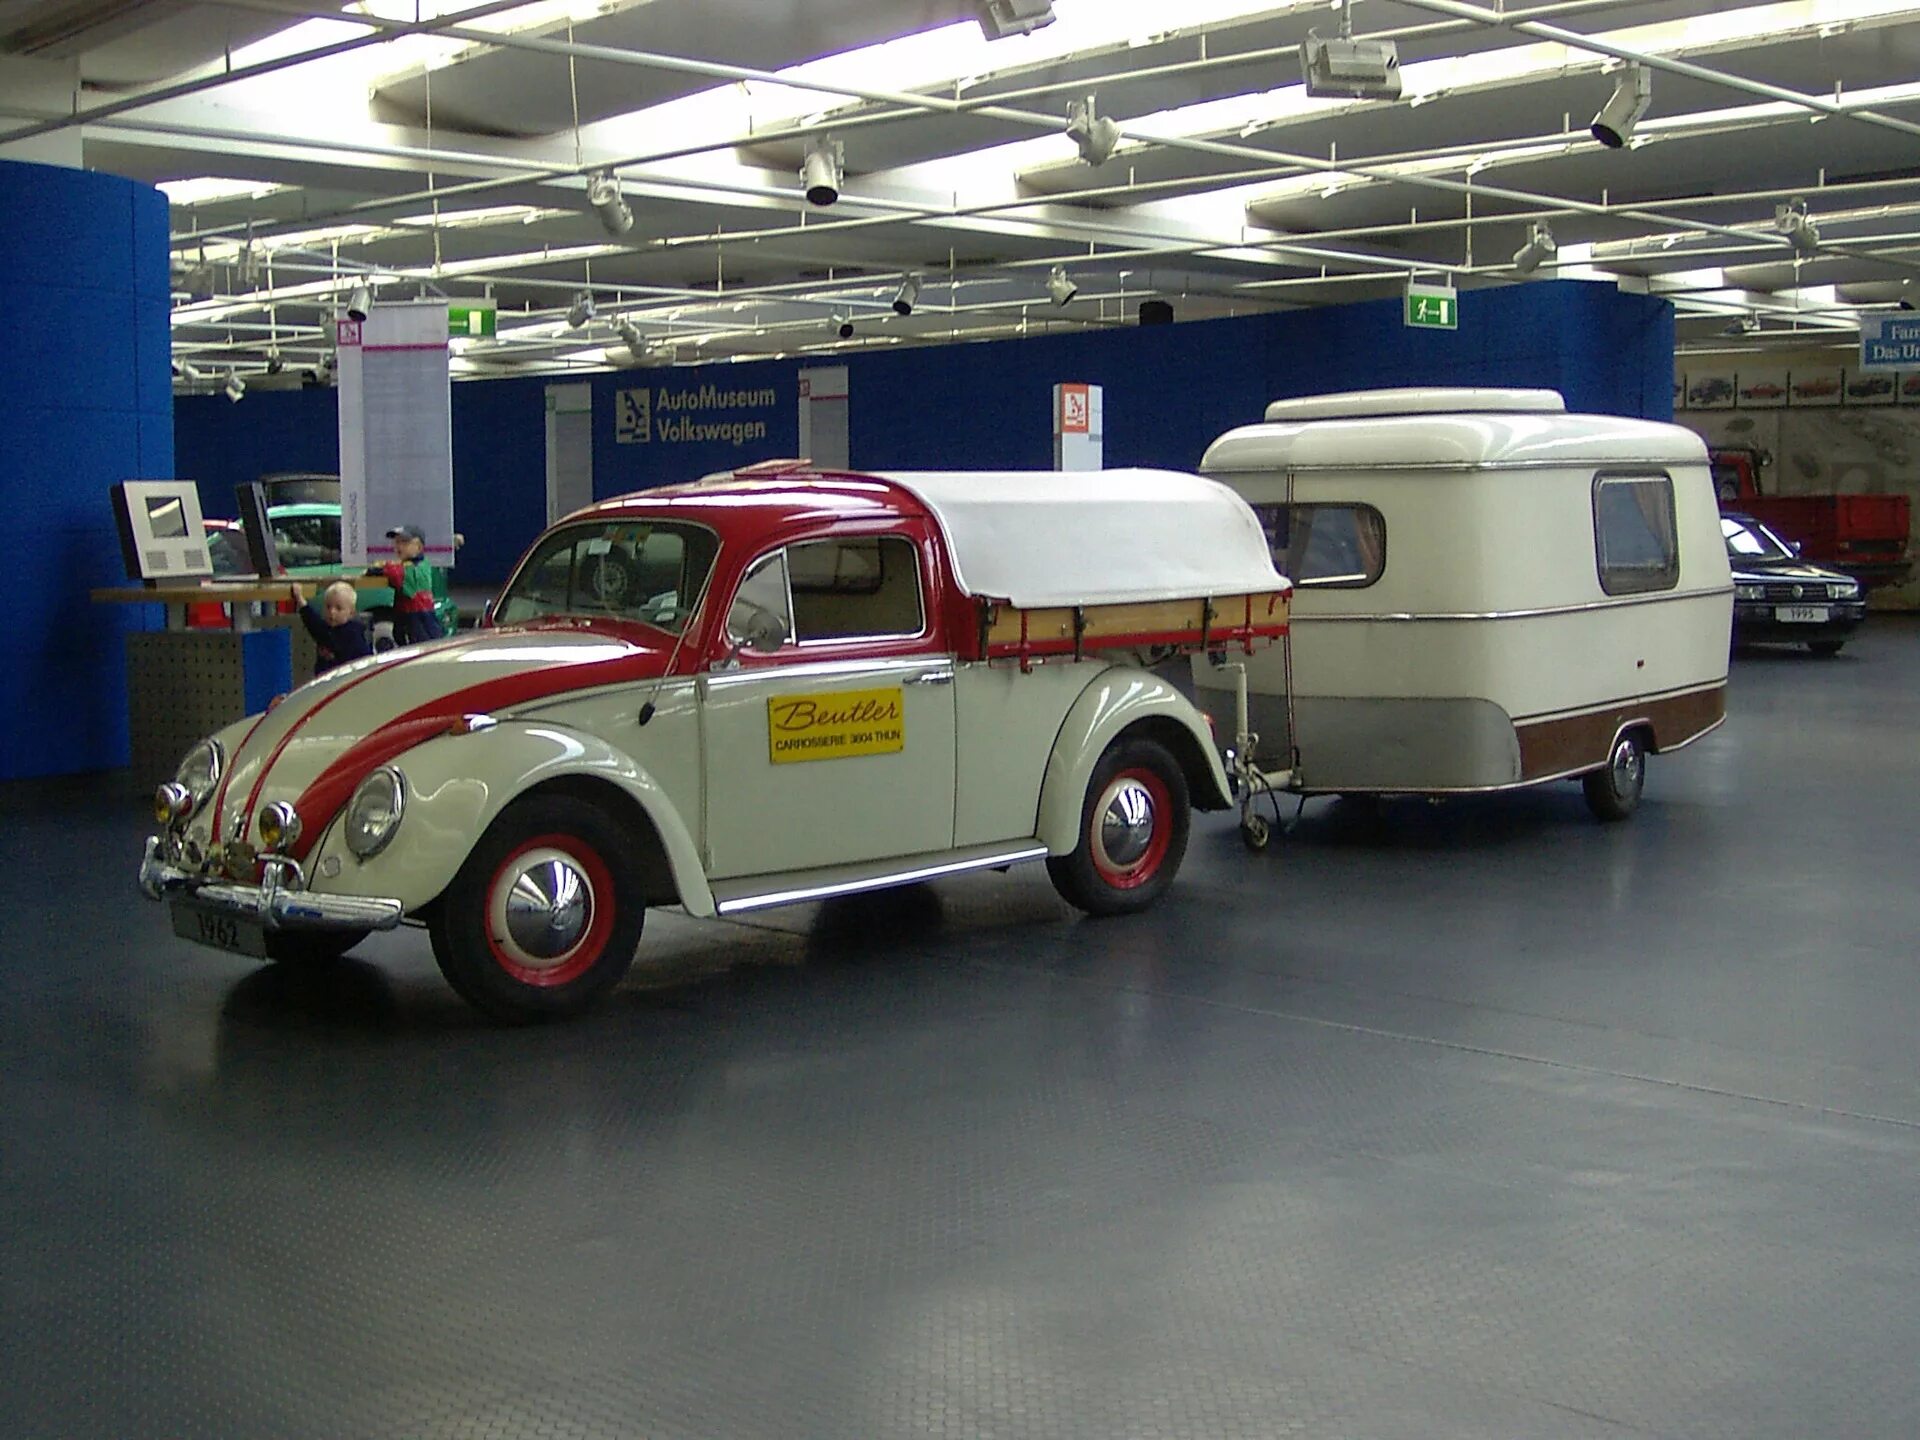 Купить фольксваген в германии. Автомузей Volkswagen. Volkswagen музей. Музей Фольксваген в Германии. Автомузей Volkswagen Jetta.